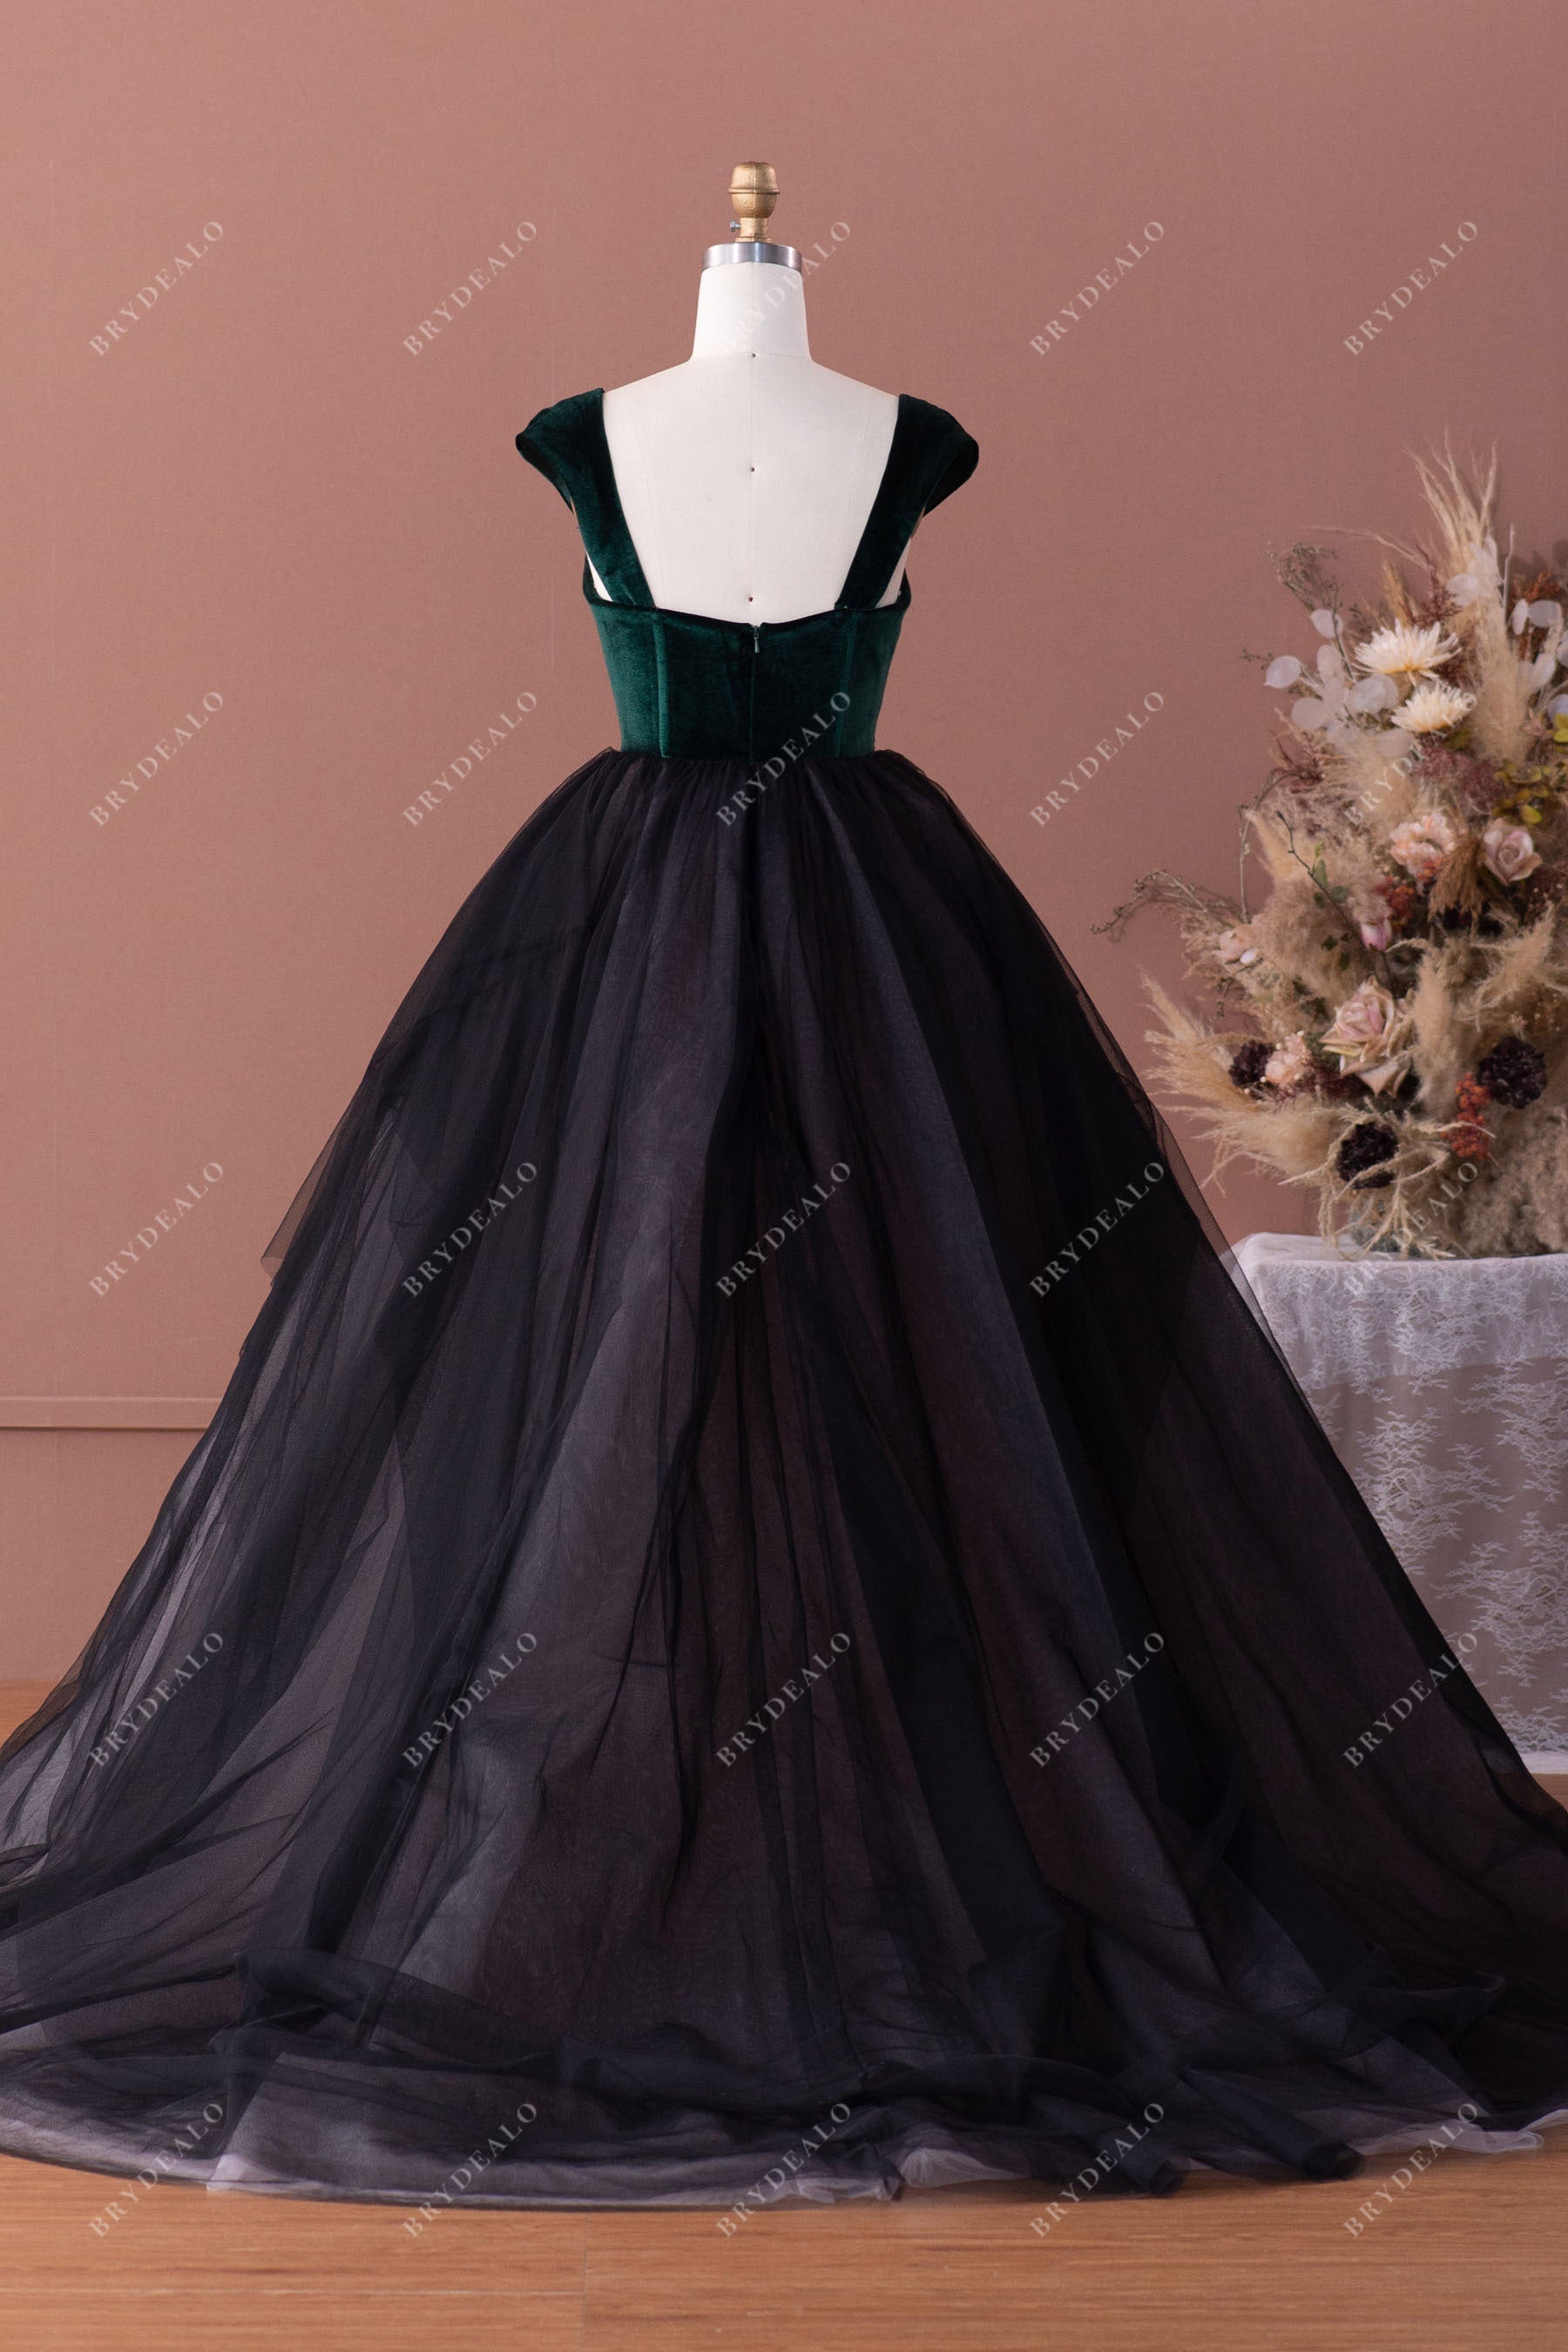 Velvet Cap Sleeves Tulle Colored Ballgown Wedding Dress